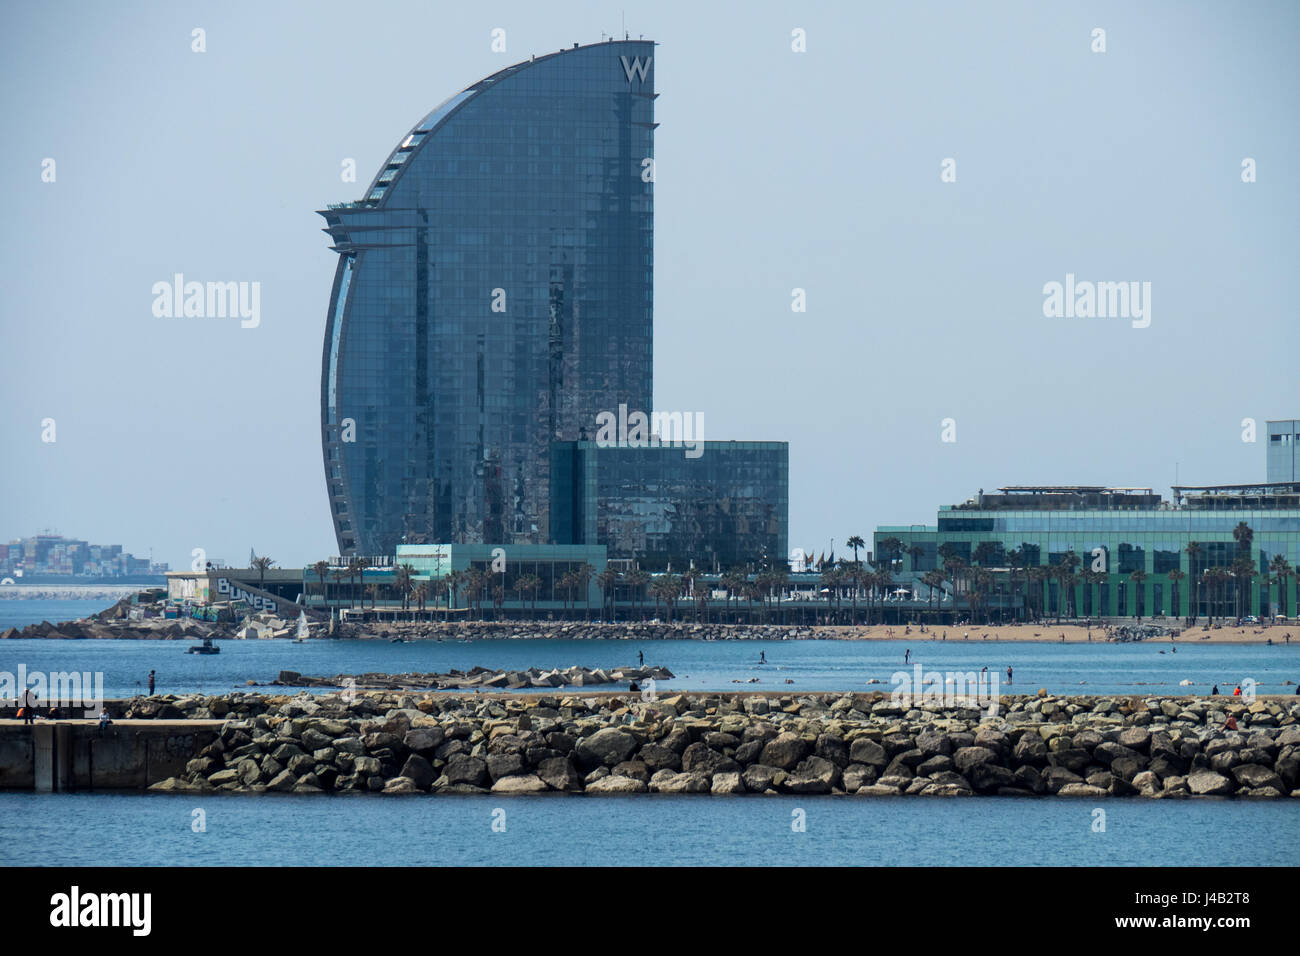 W Barcelona Hotel situé dans le port de Barcelone, Espagne Photo Stock -  Alamy